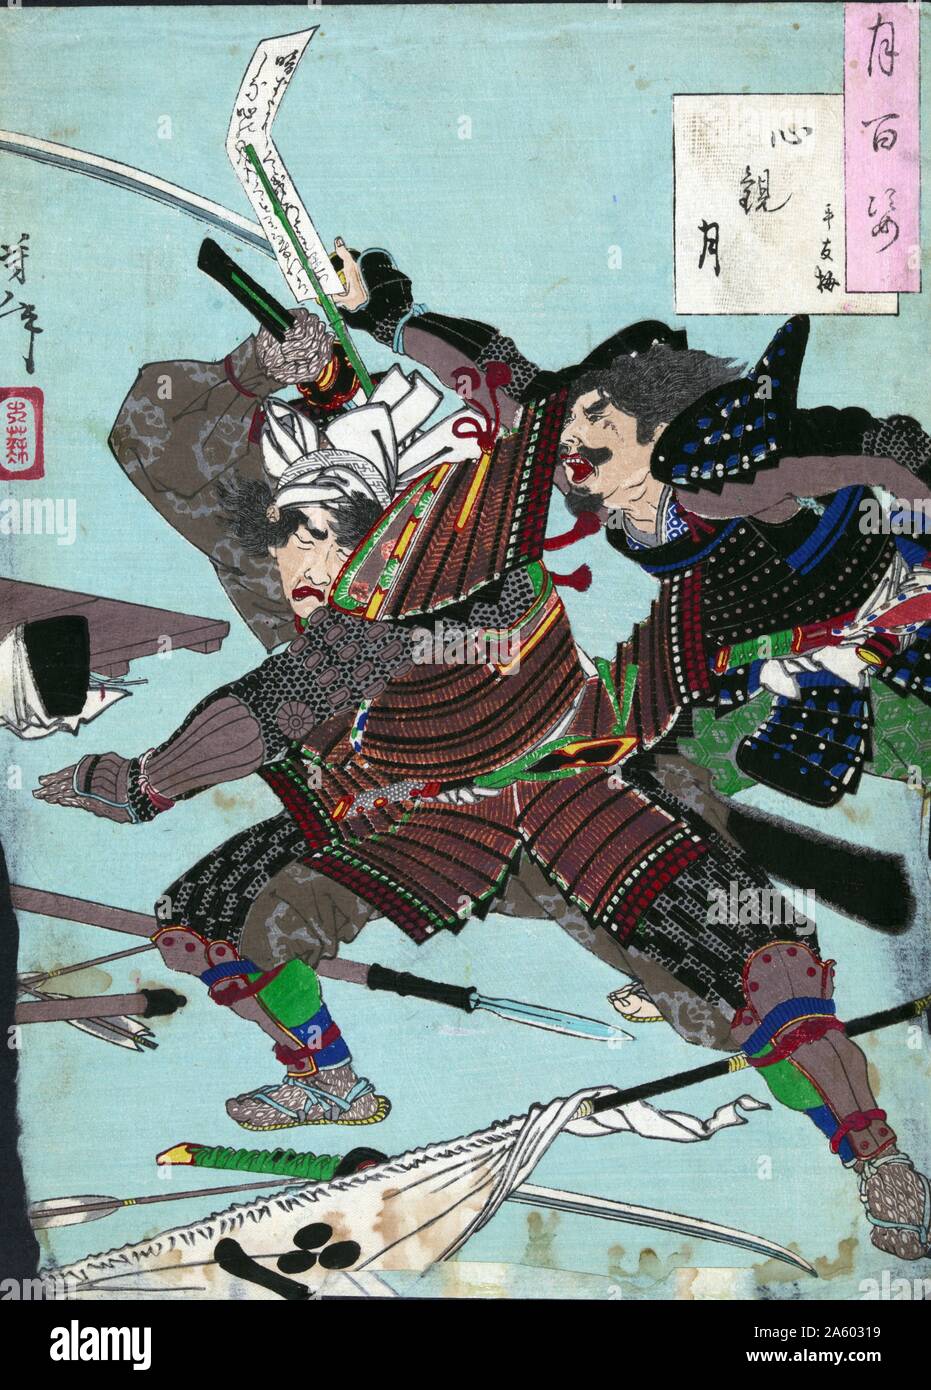 Mond durch das Herz von Yoshitoshi Taiso (1839-1892) angezeigt. Holzschnitt Farbe print zeigt zwei Samurai Krieger kämpfen unter gefallenen Waffen. Stockfoto